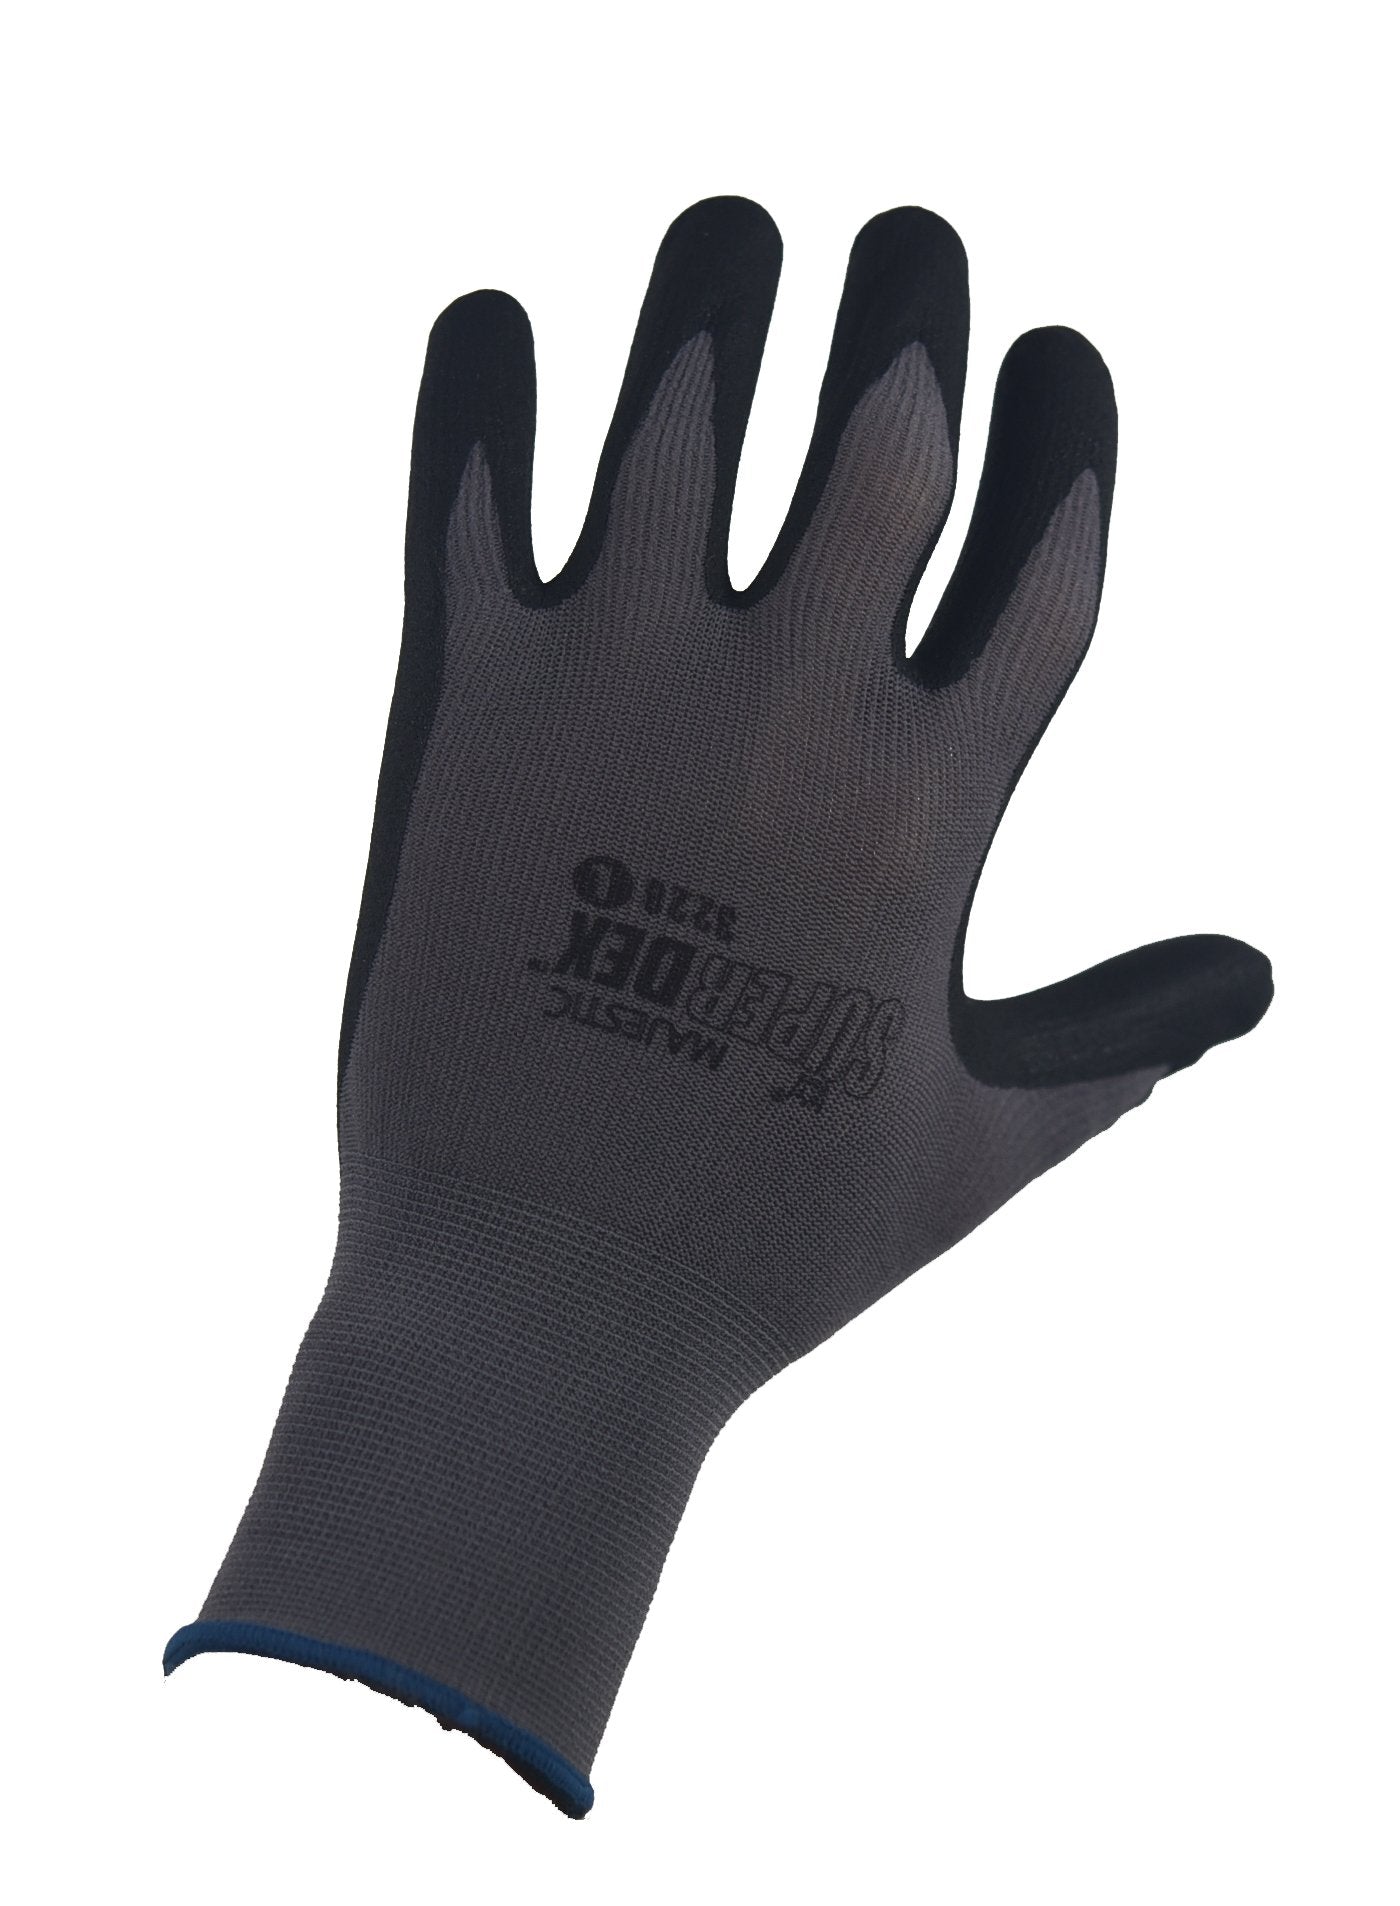 Majestic Men's SuperDex Micro Foam Glove - Work World - Workwear, Work Boots, Safety Gear